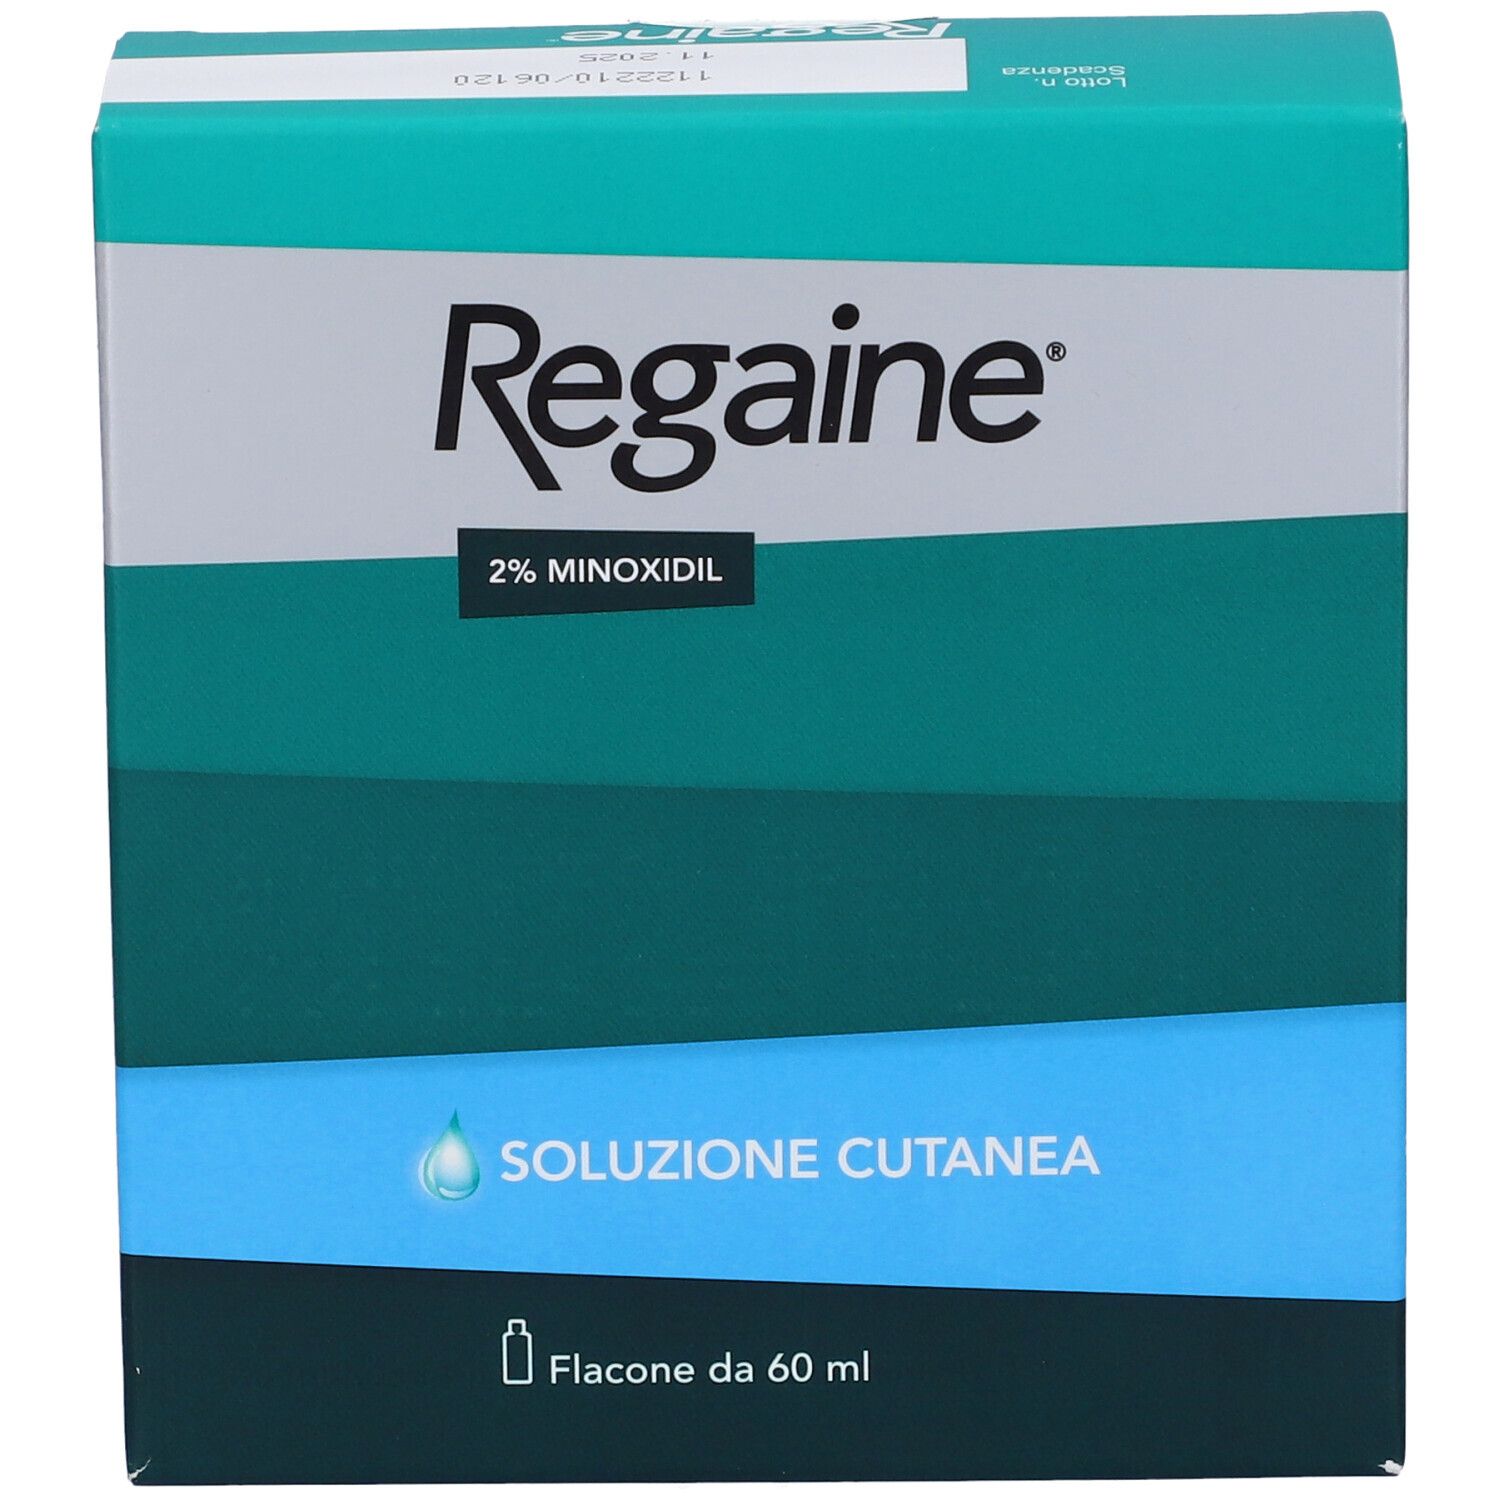 Regaine® 2% Minoxidil Soluzione Cutanea